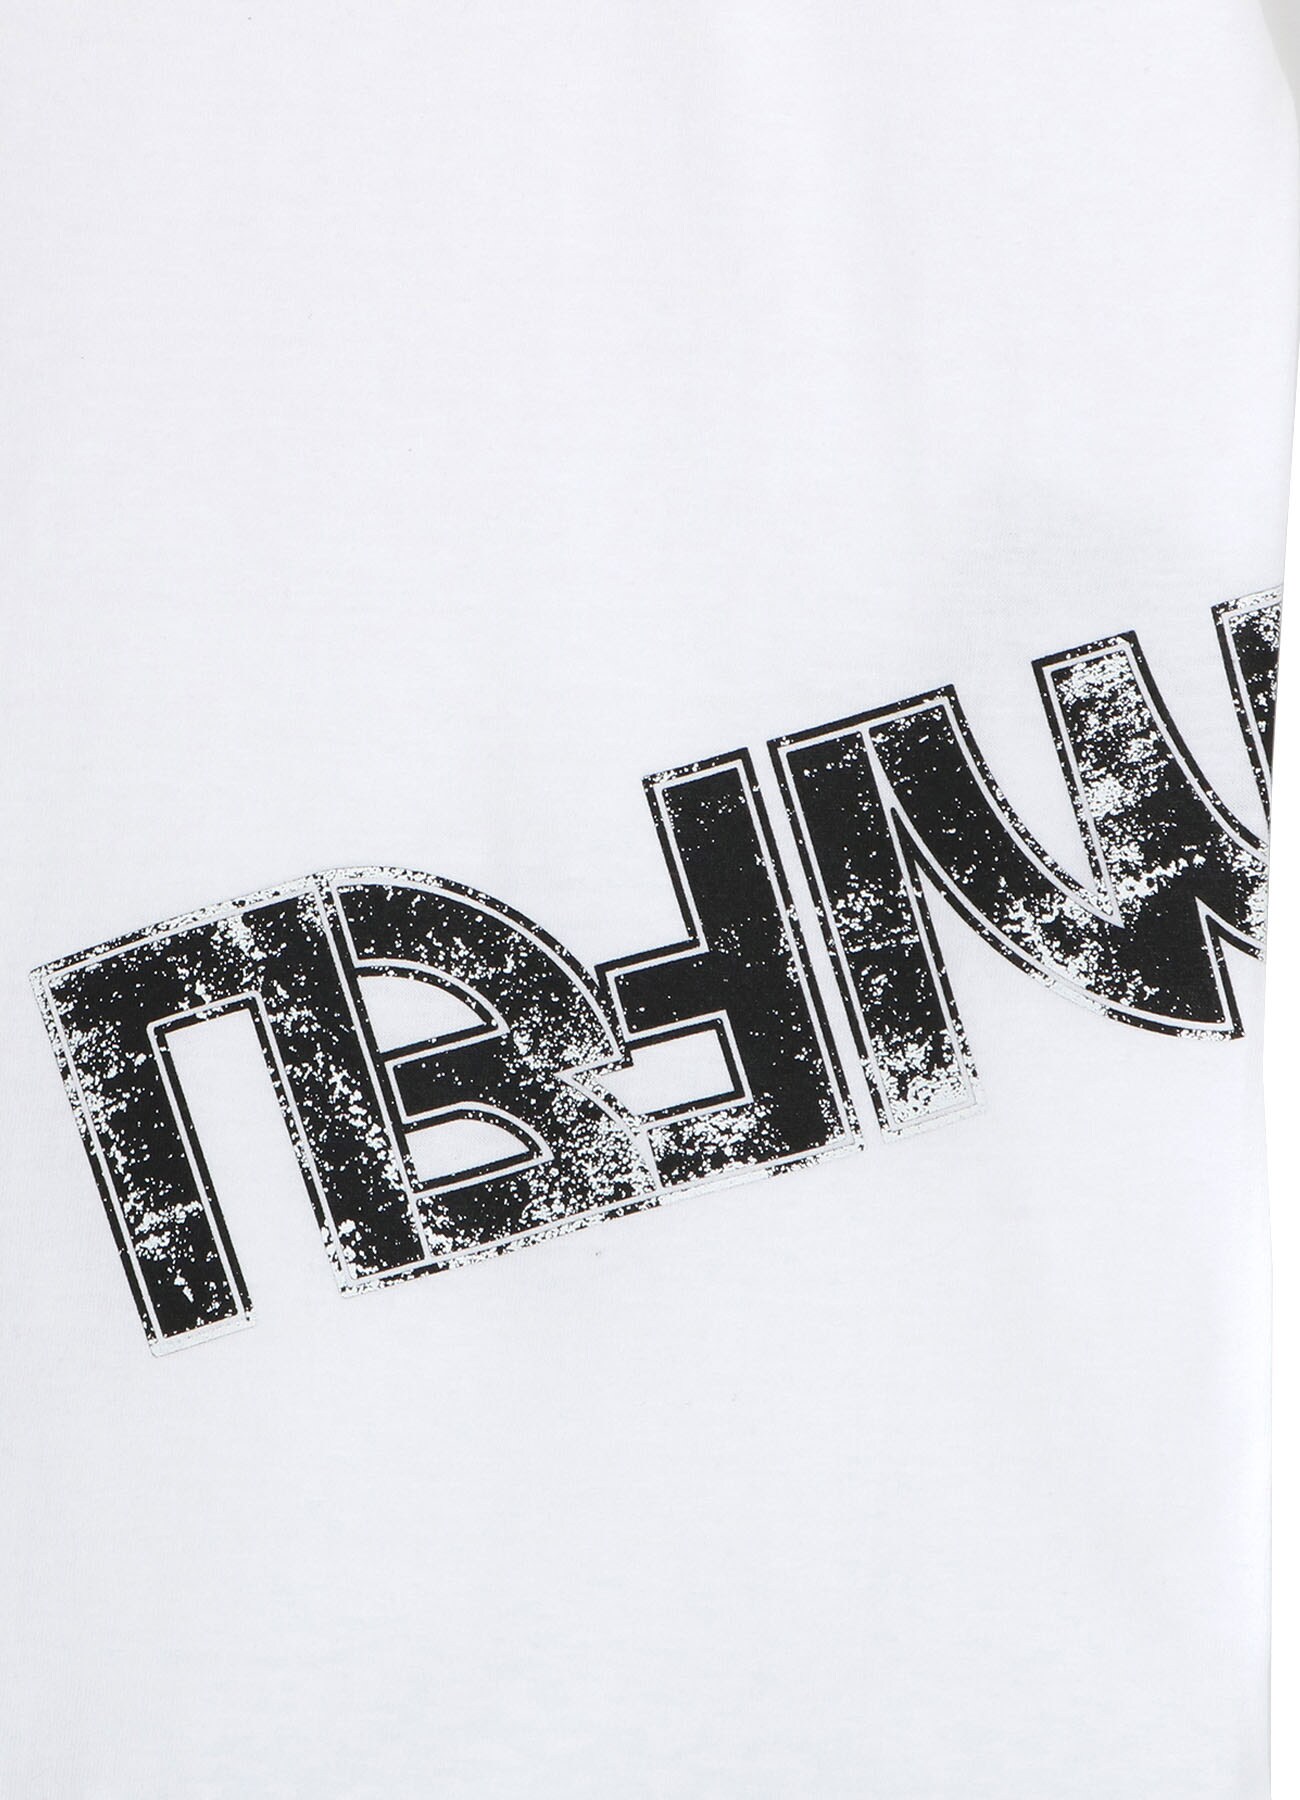 20/-Plain Stitch LIMI FEU Print T-Shirt A